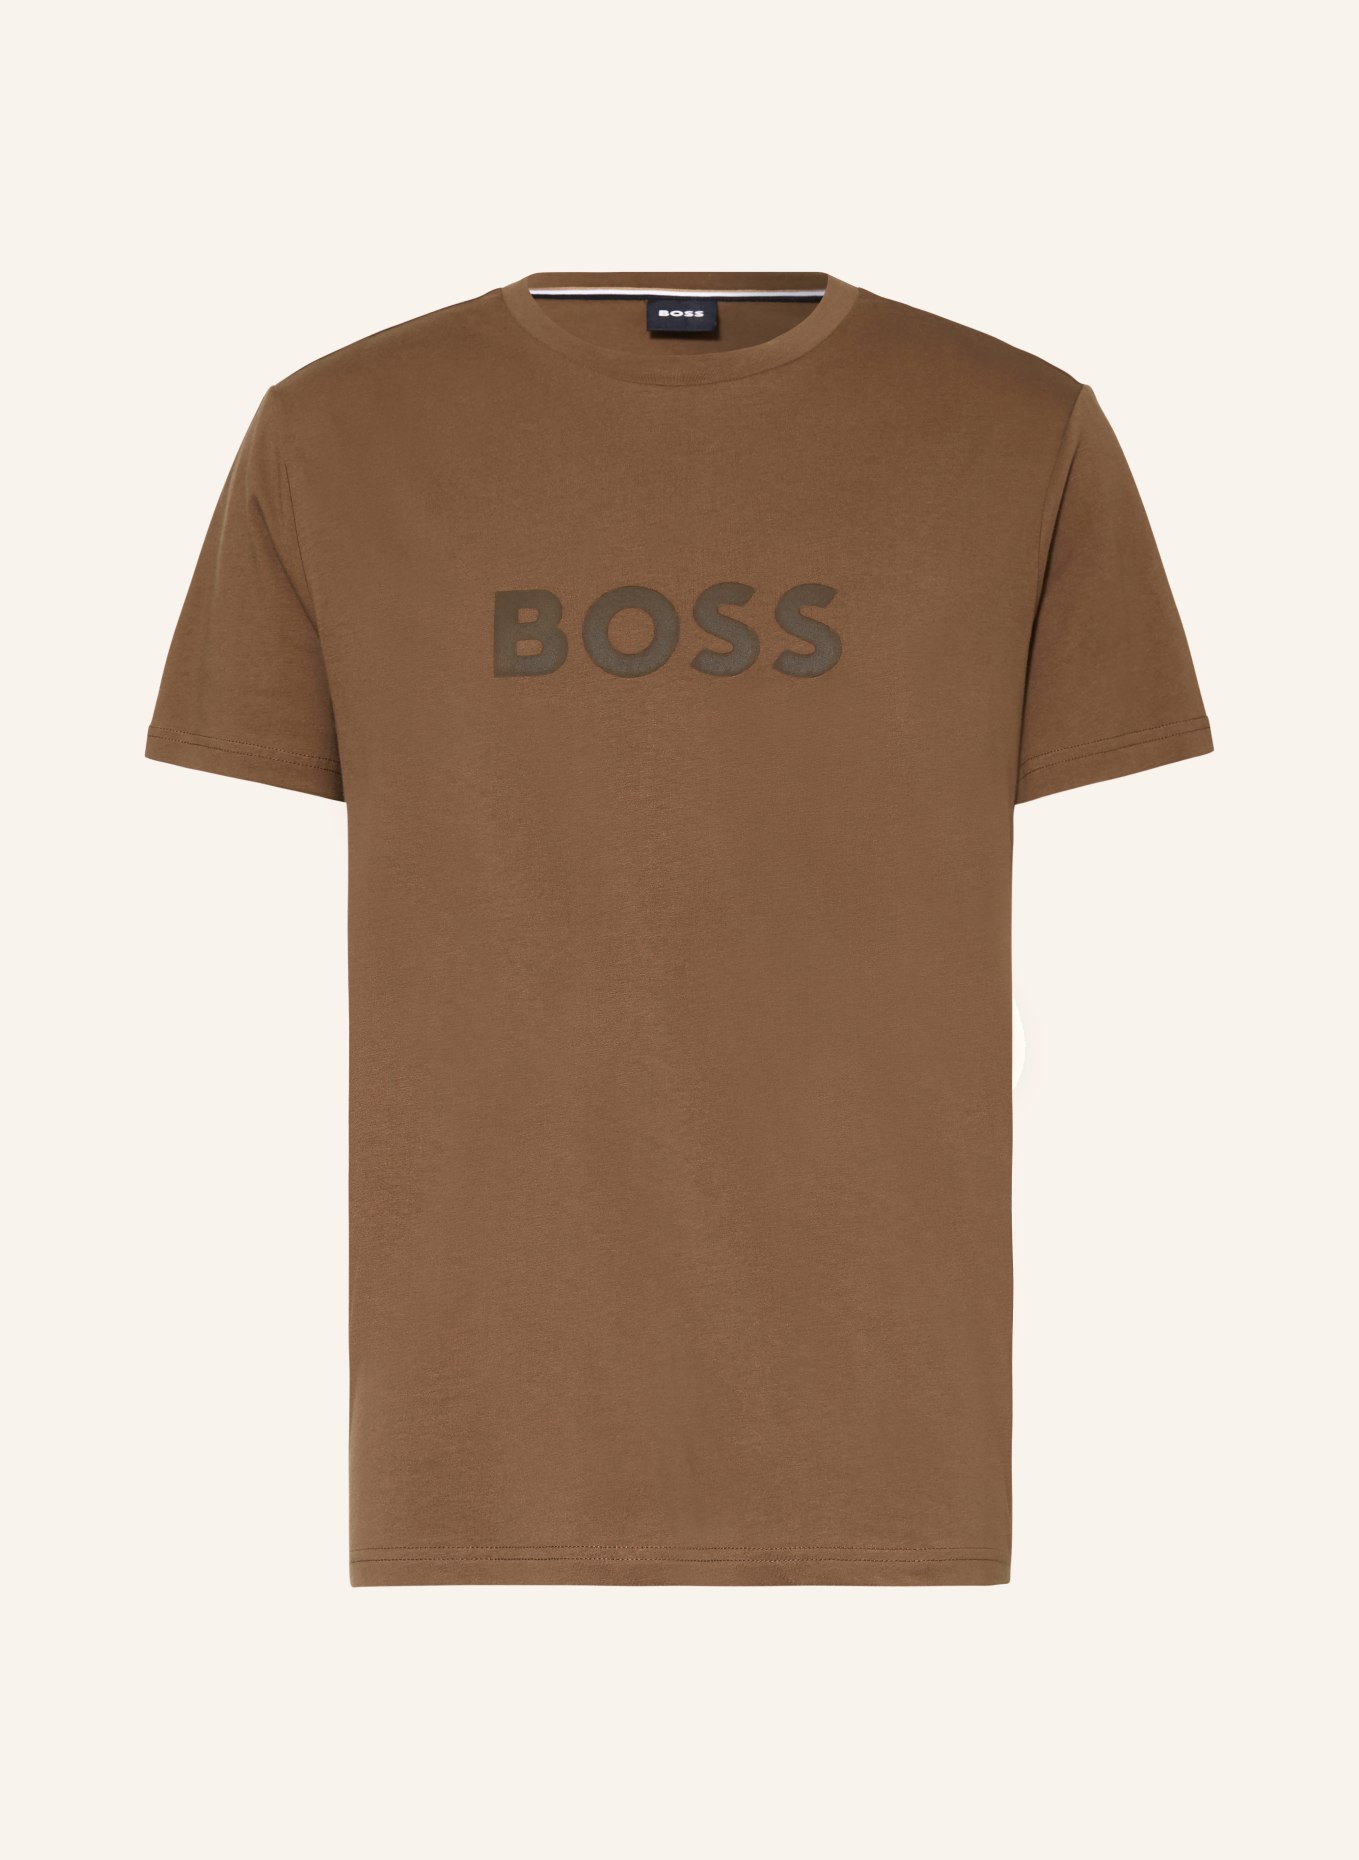 BOSS UV-Shirt mit UV-Schutz 50+, Farbe: BRAUN (Bild 1)